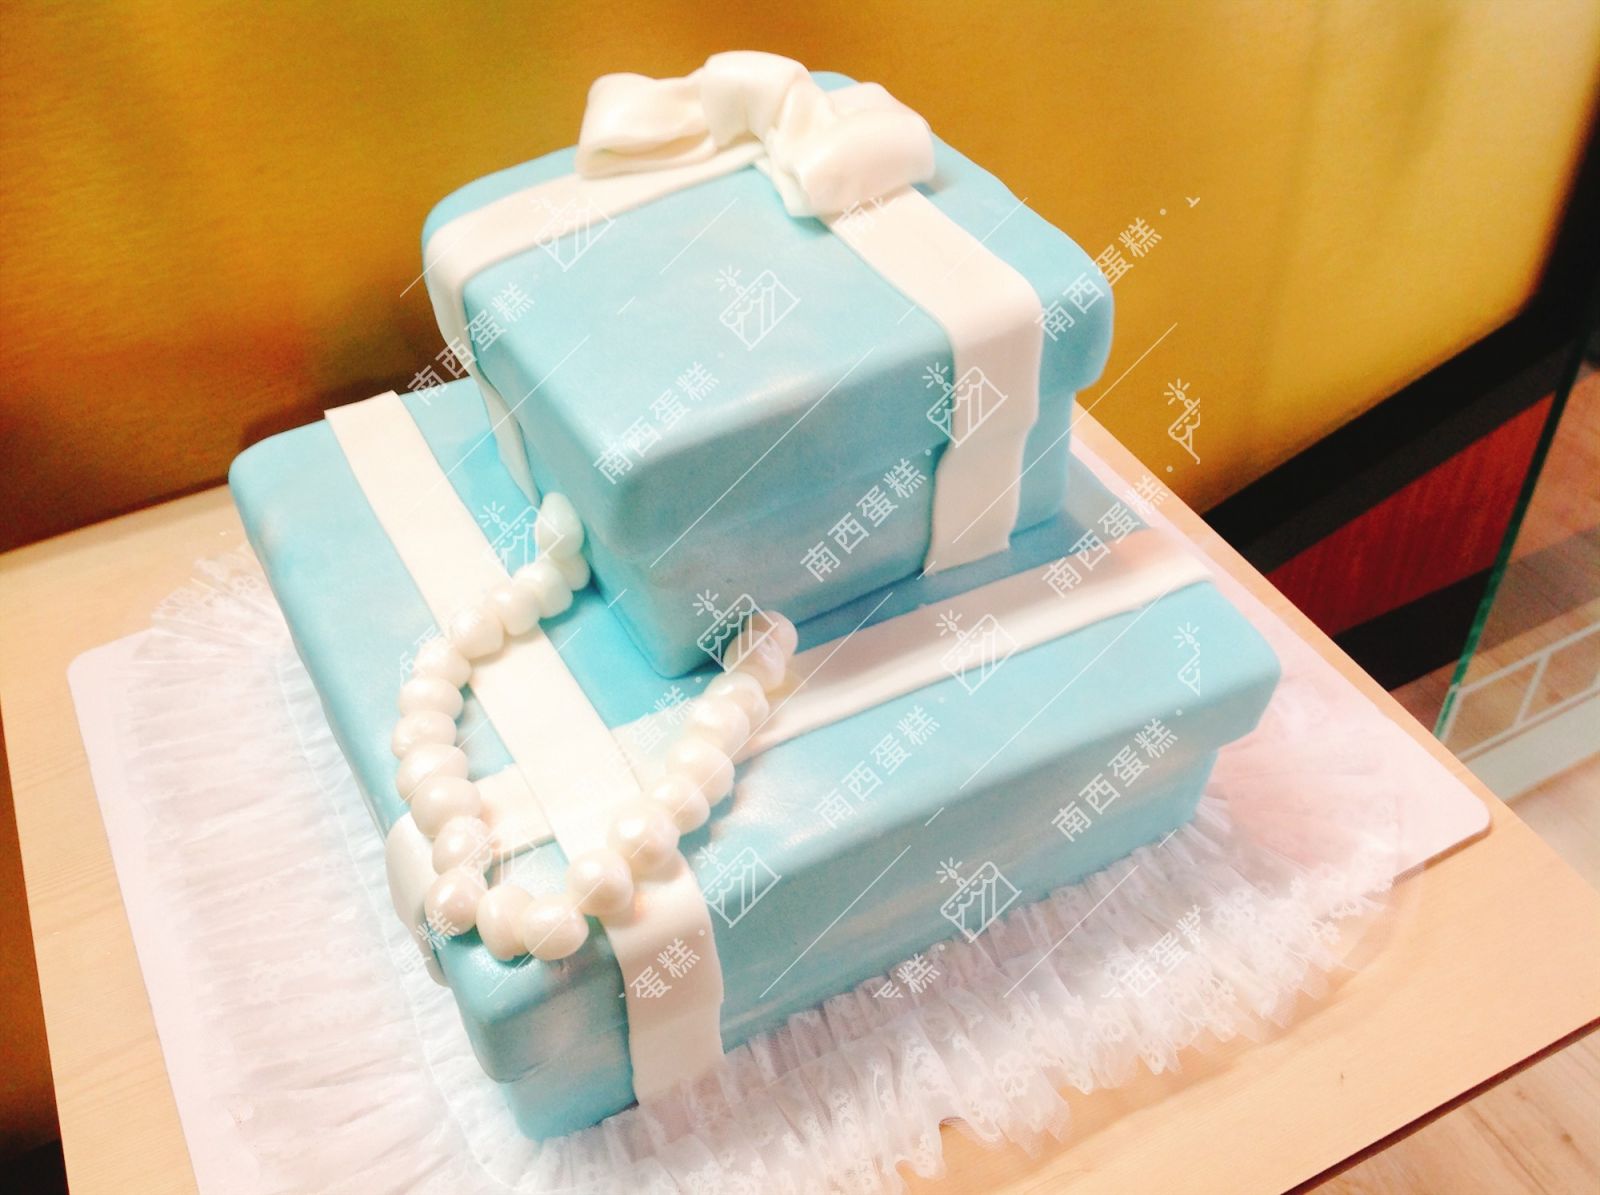 台北禮盒造型蛋糕-南西蛋糕